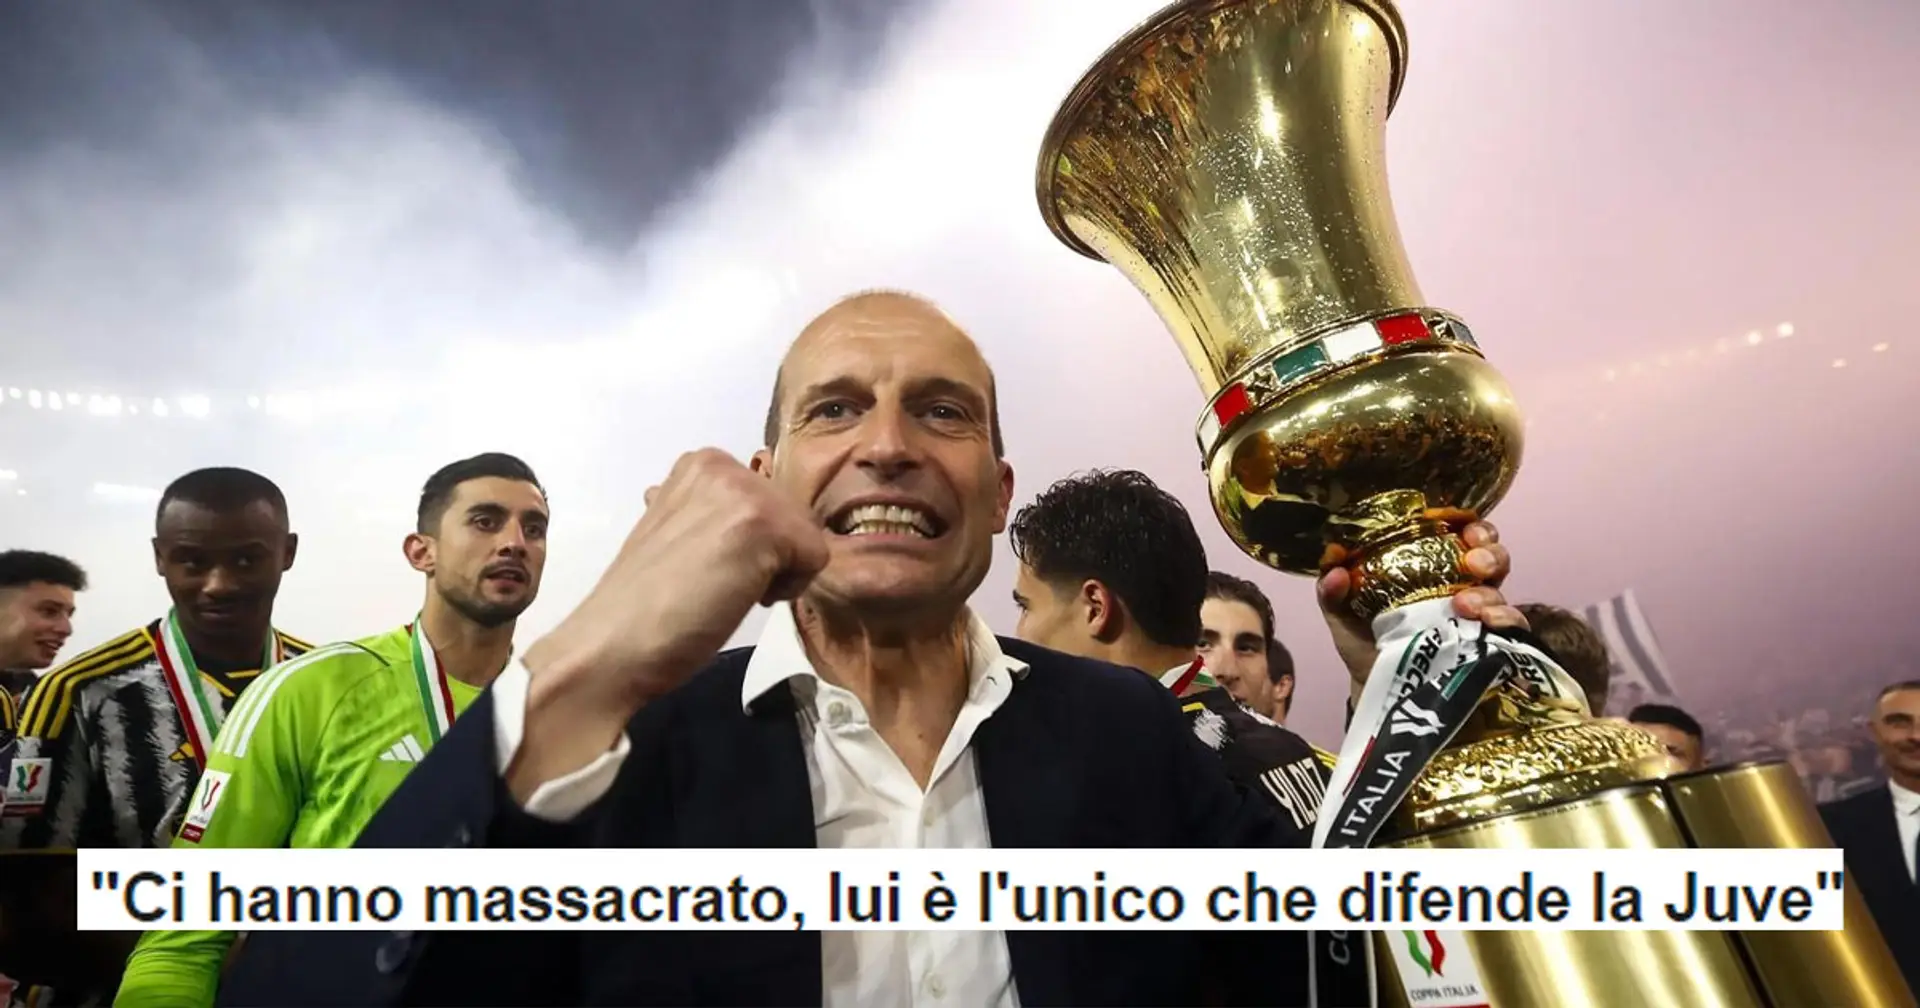 "Ci hanno massacrato, lui è l'unico che difende la Juventus": la reazione dei tifosi alla sfuriata di Allegri